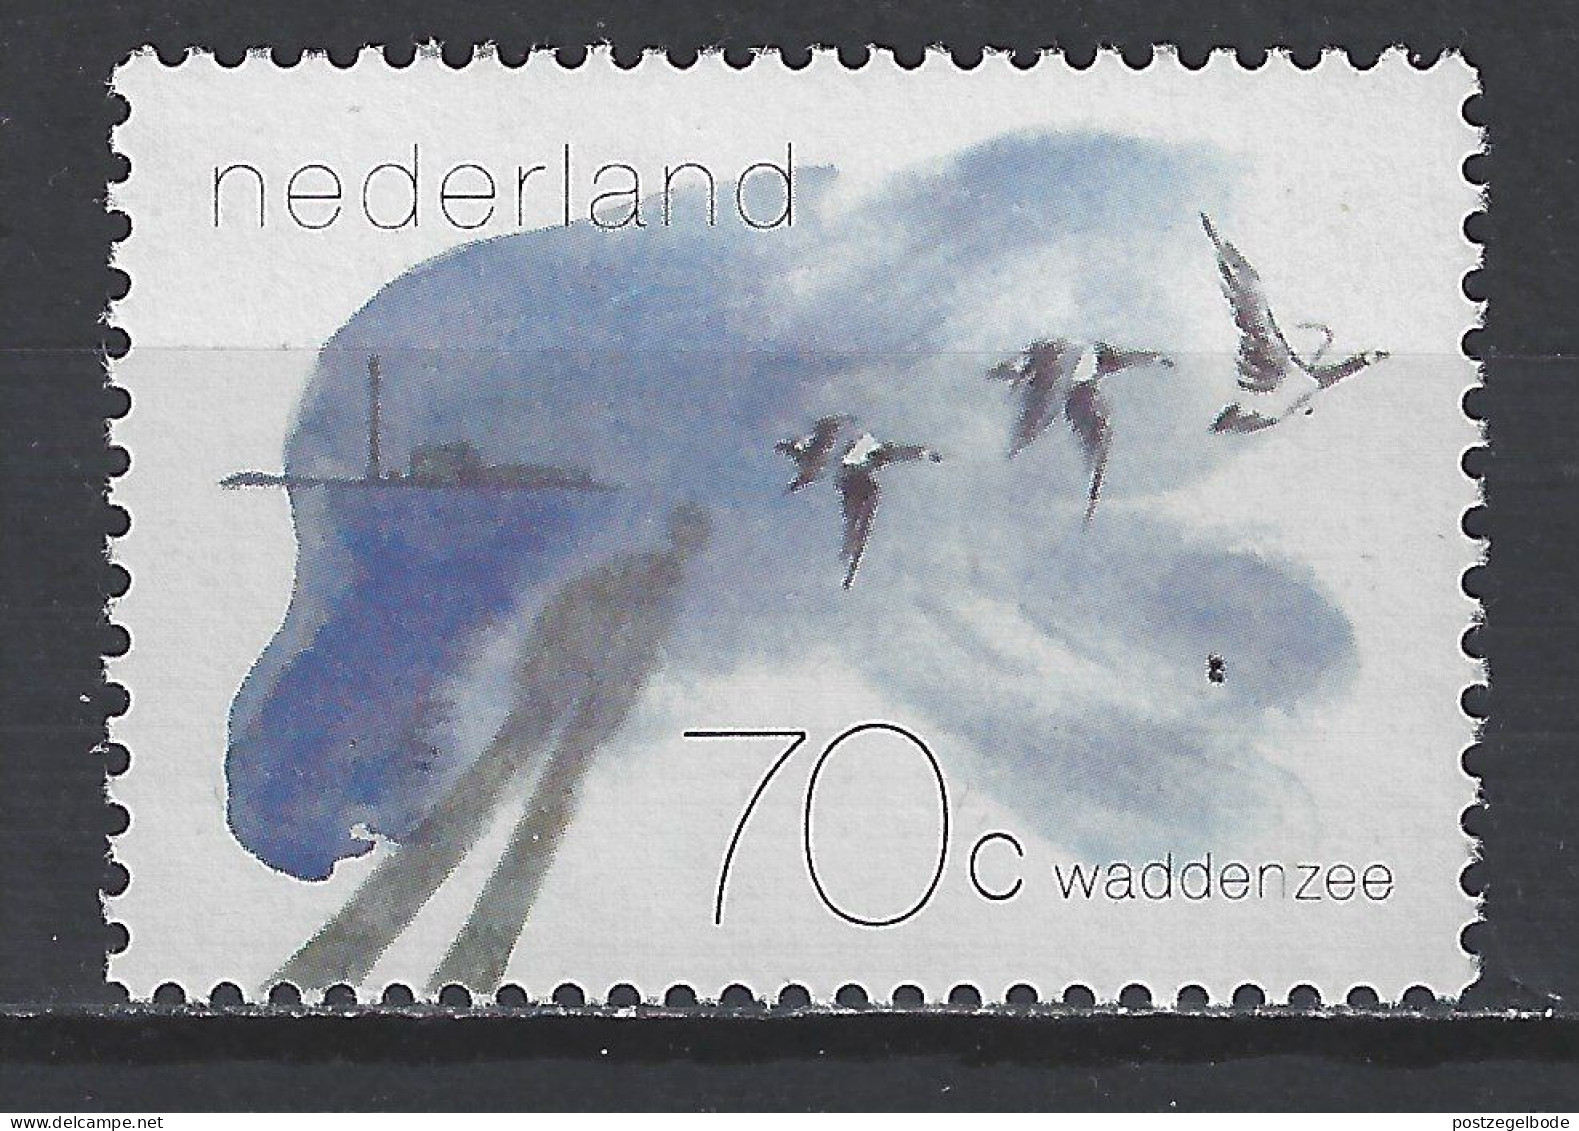 Netherlands Nederland Pays Bas Holanda Niederlande MNH ; Gans Goose Oie Ganso Brandgans Vogel Bird Ave Oiseau - Oche